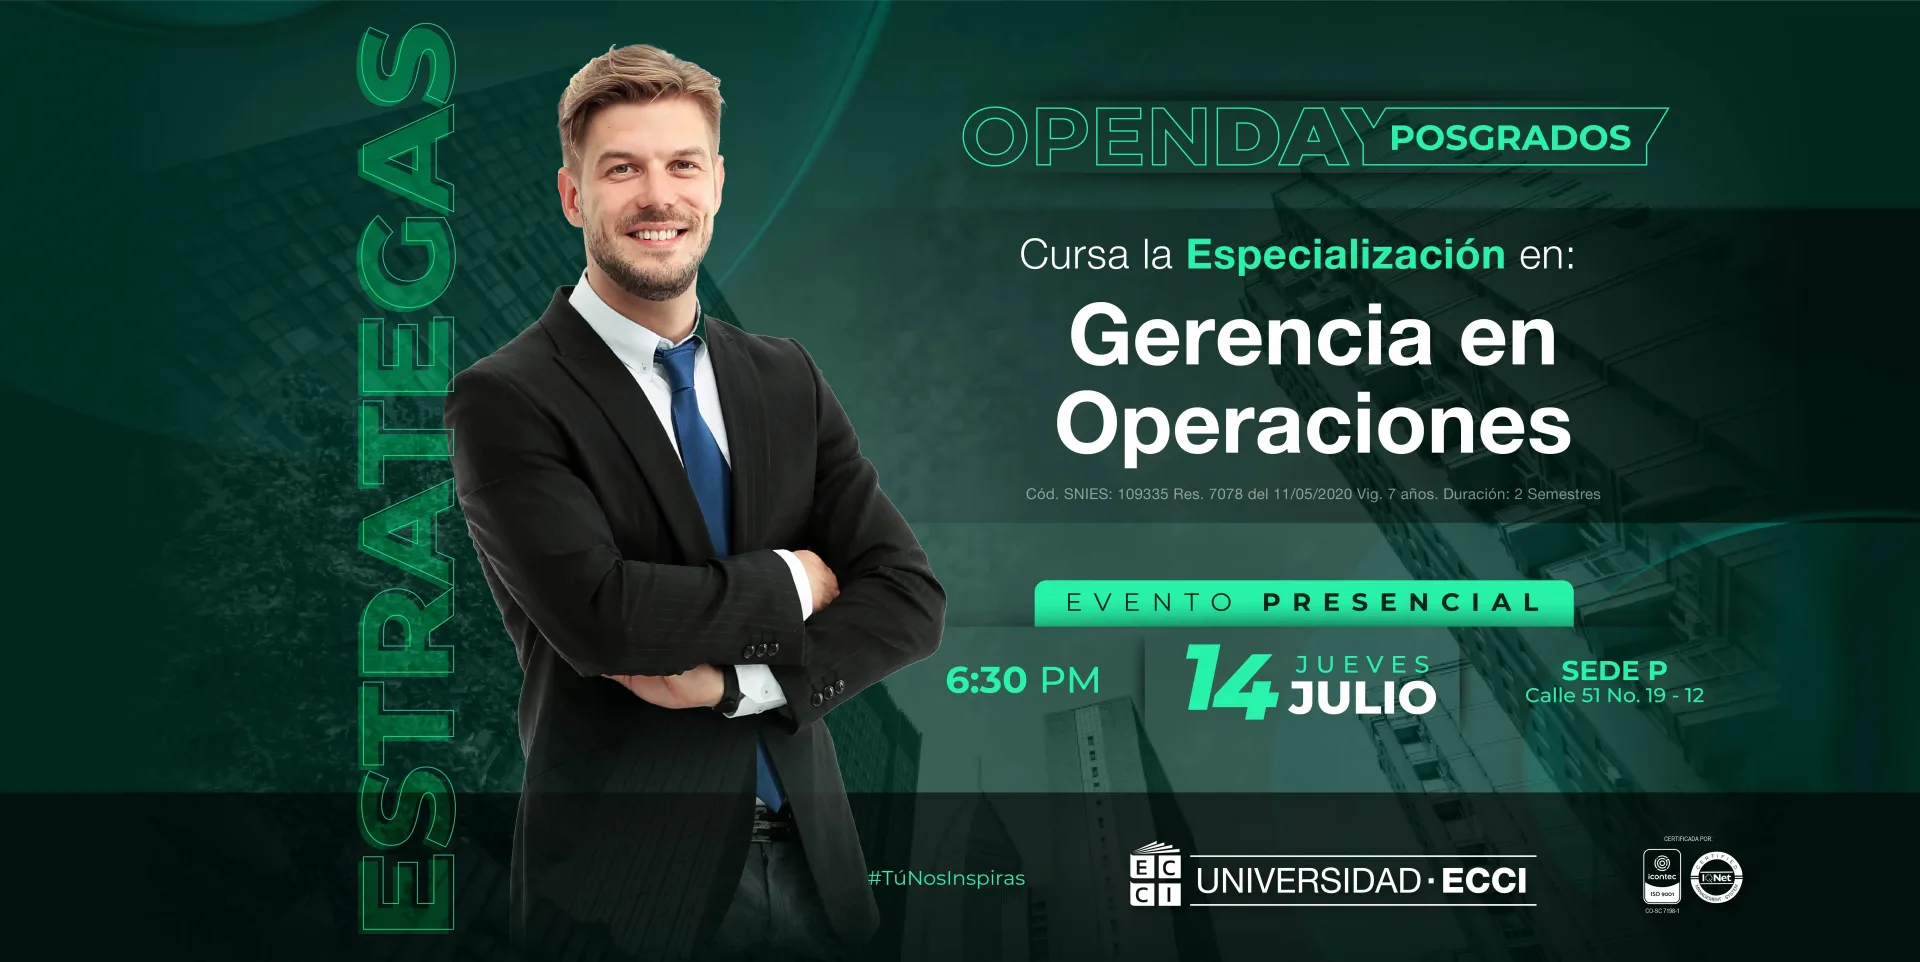 Gerencia de Operaciones Open Day: posgrados